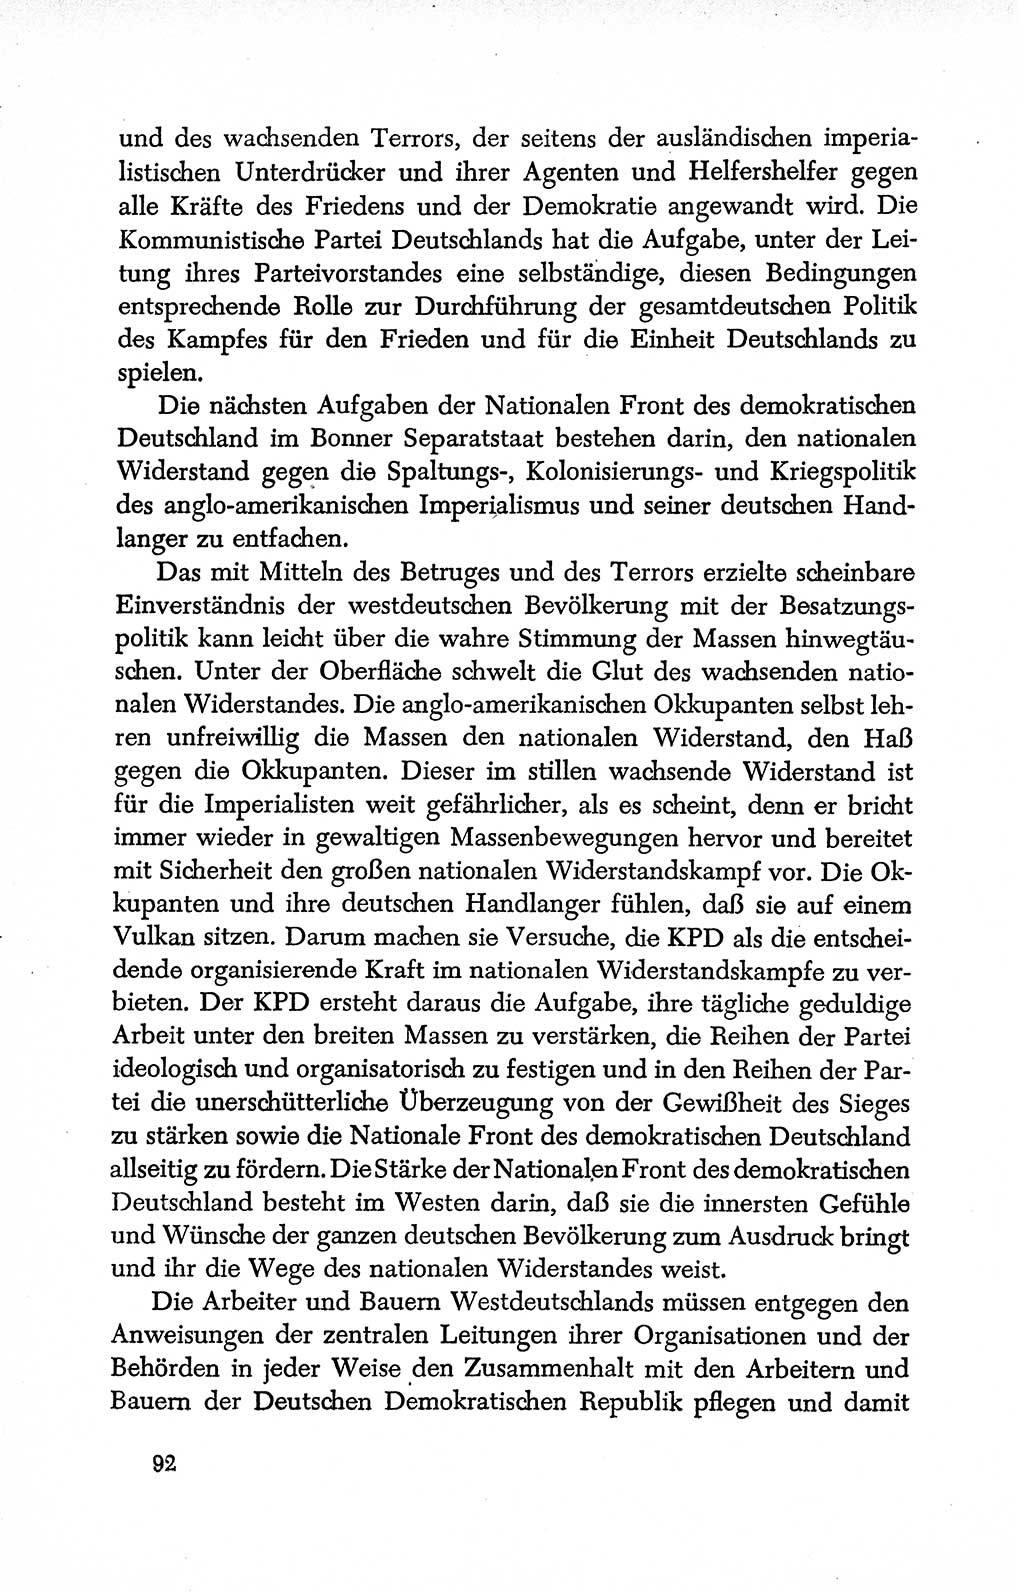 Dokumente der Sozialistischen Einheitspartei Deutschlands (SED) [Deutsche Demokratische Republik (DDR)] 1950-1952, Seite 92 (Dok. SED DDR 1950-1952, S. 92)